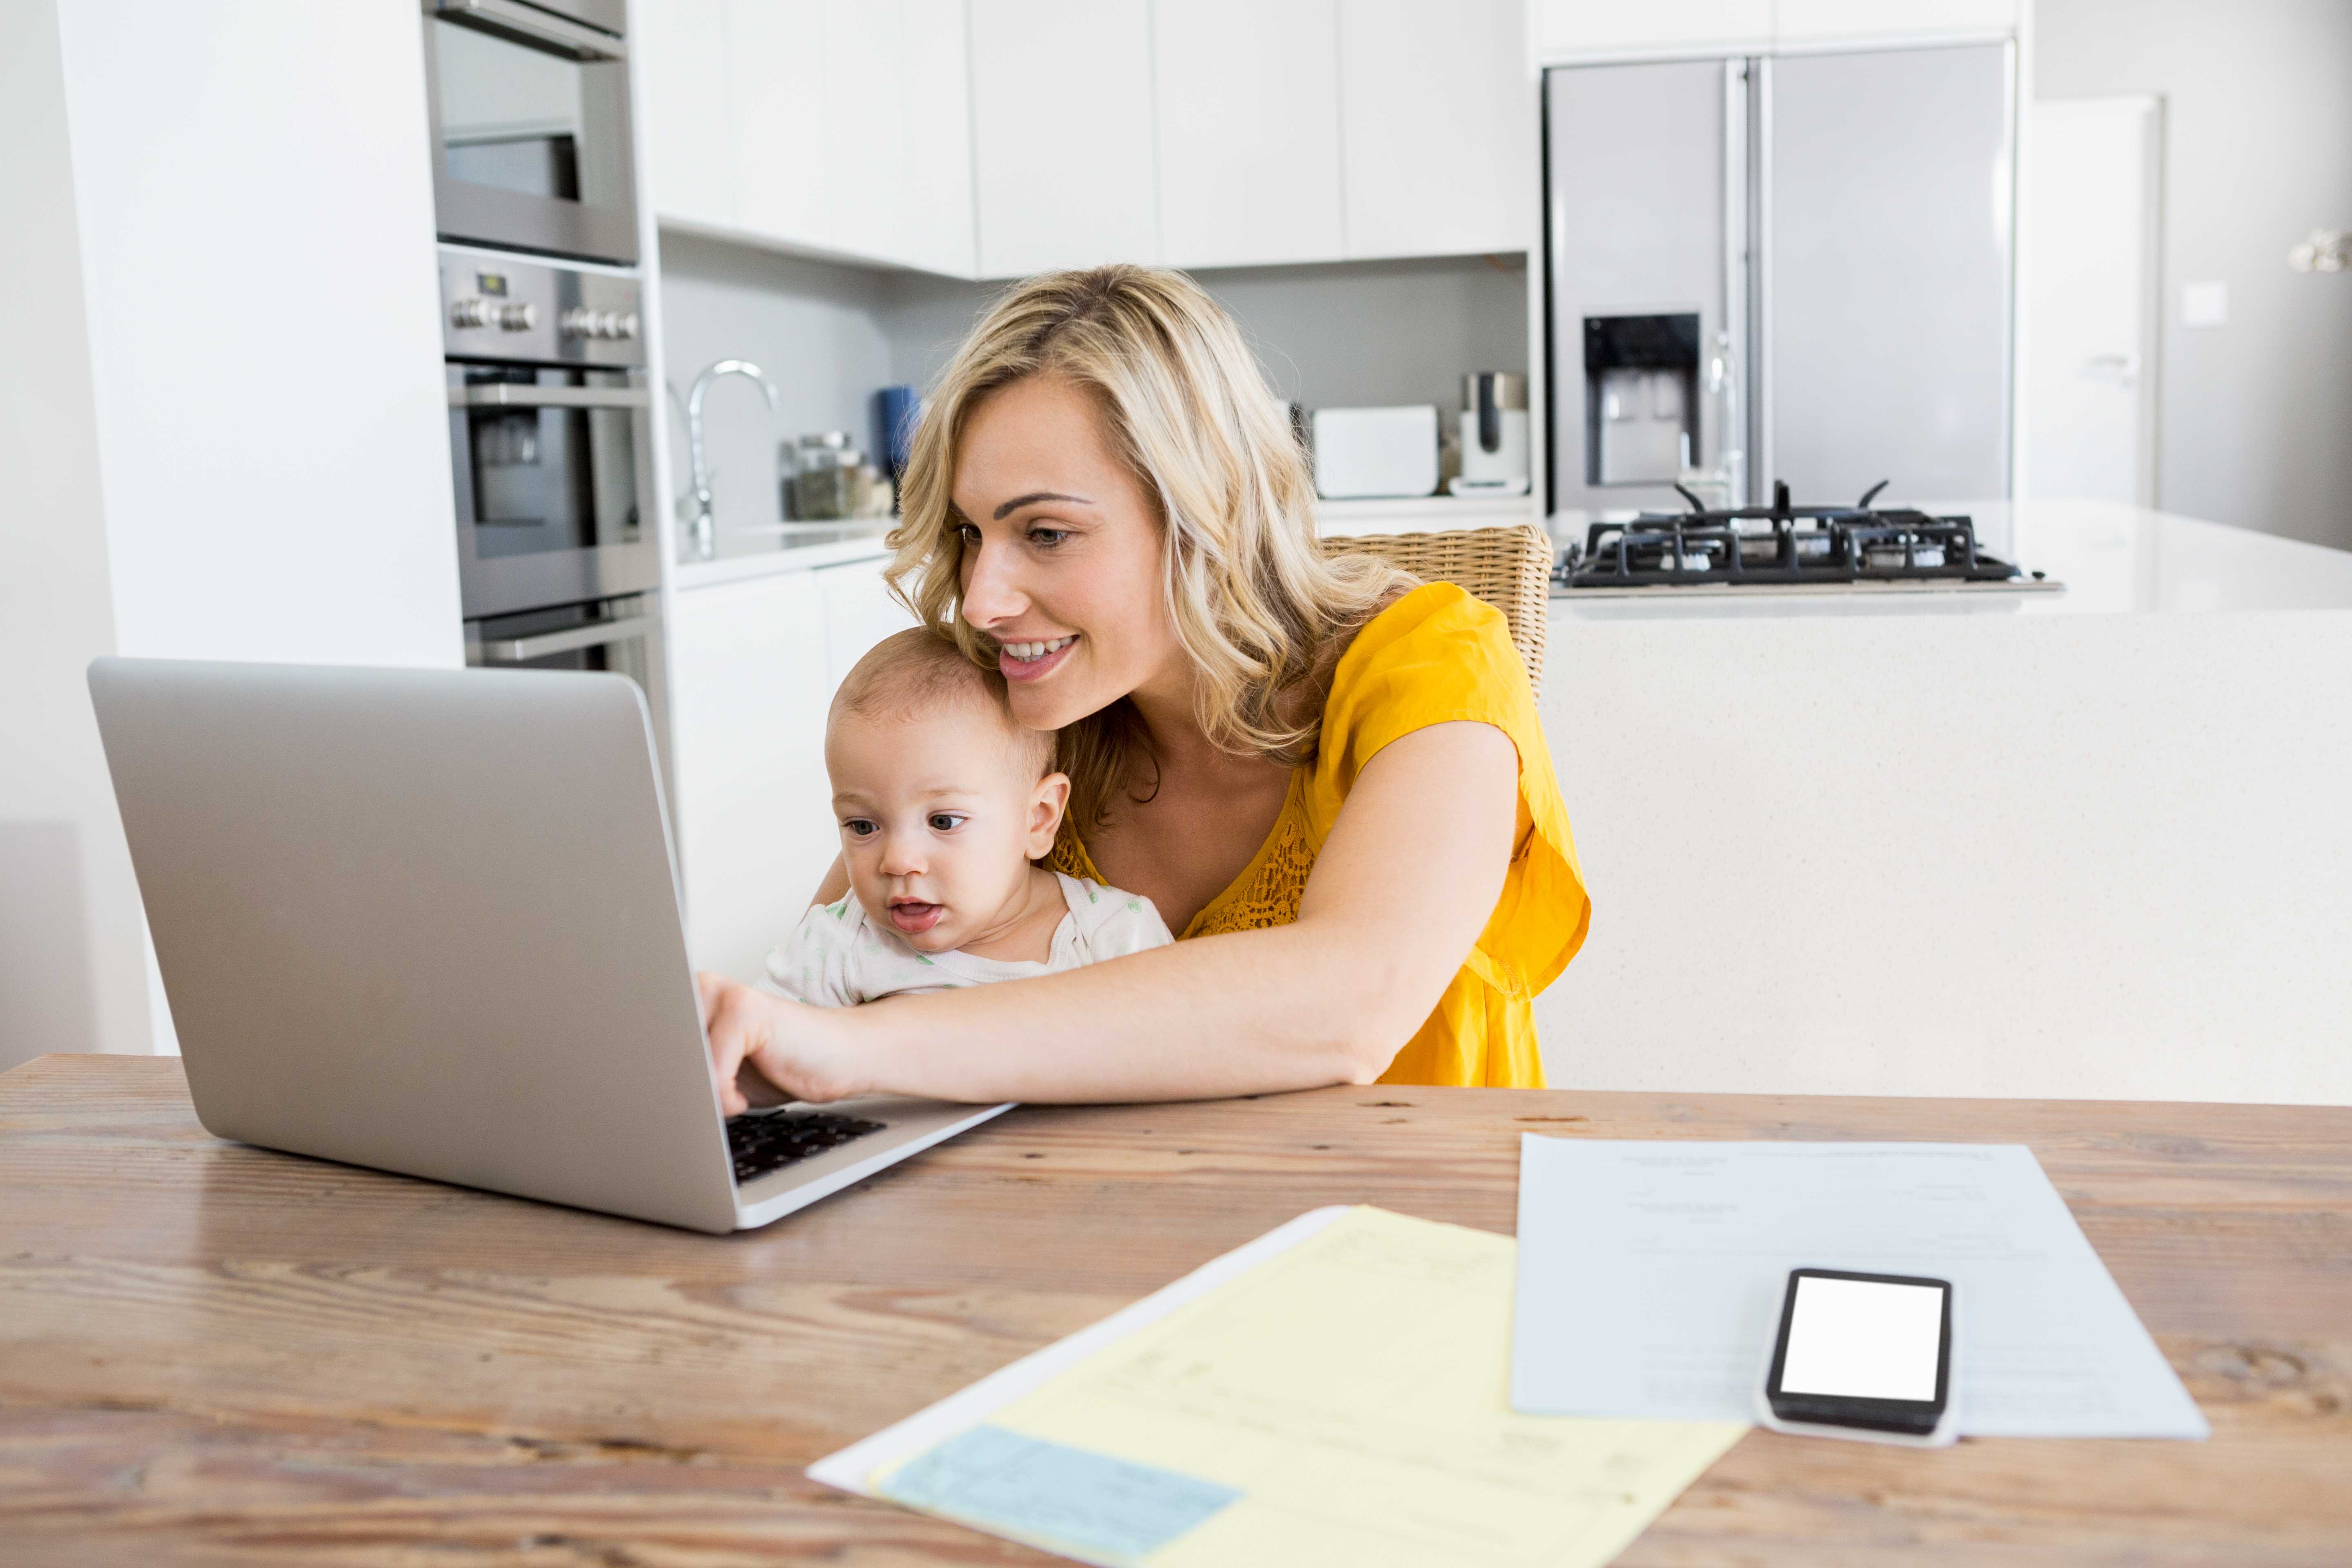 Работа на дому в декретном отпуске, топ 38 способов заработать маме в декрете